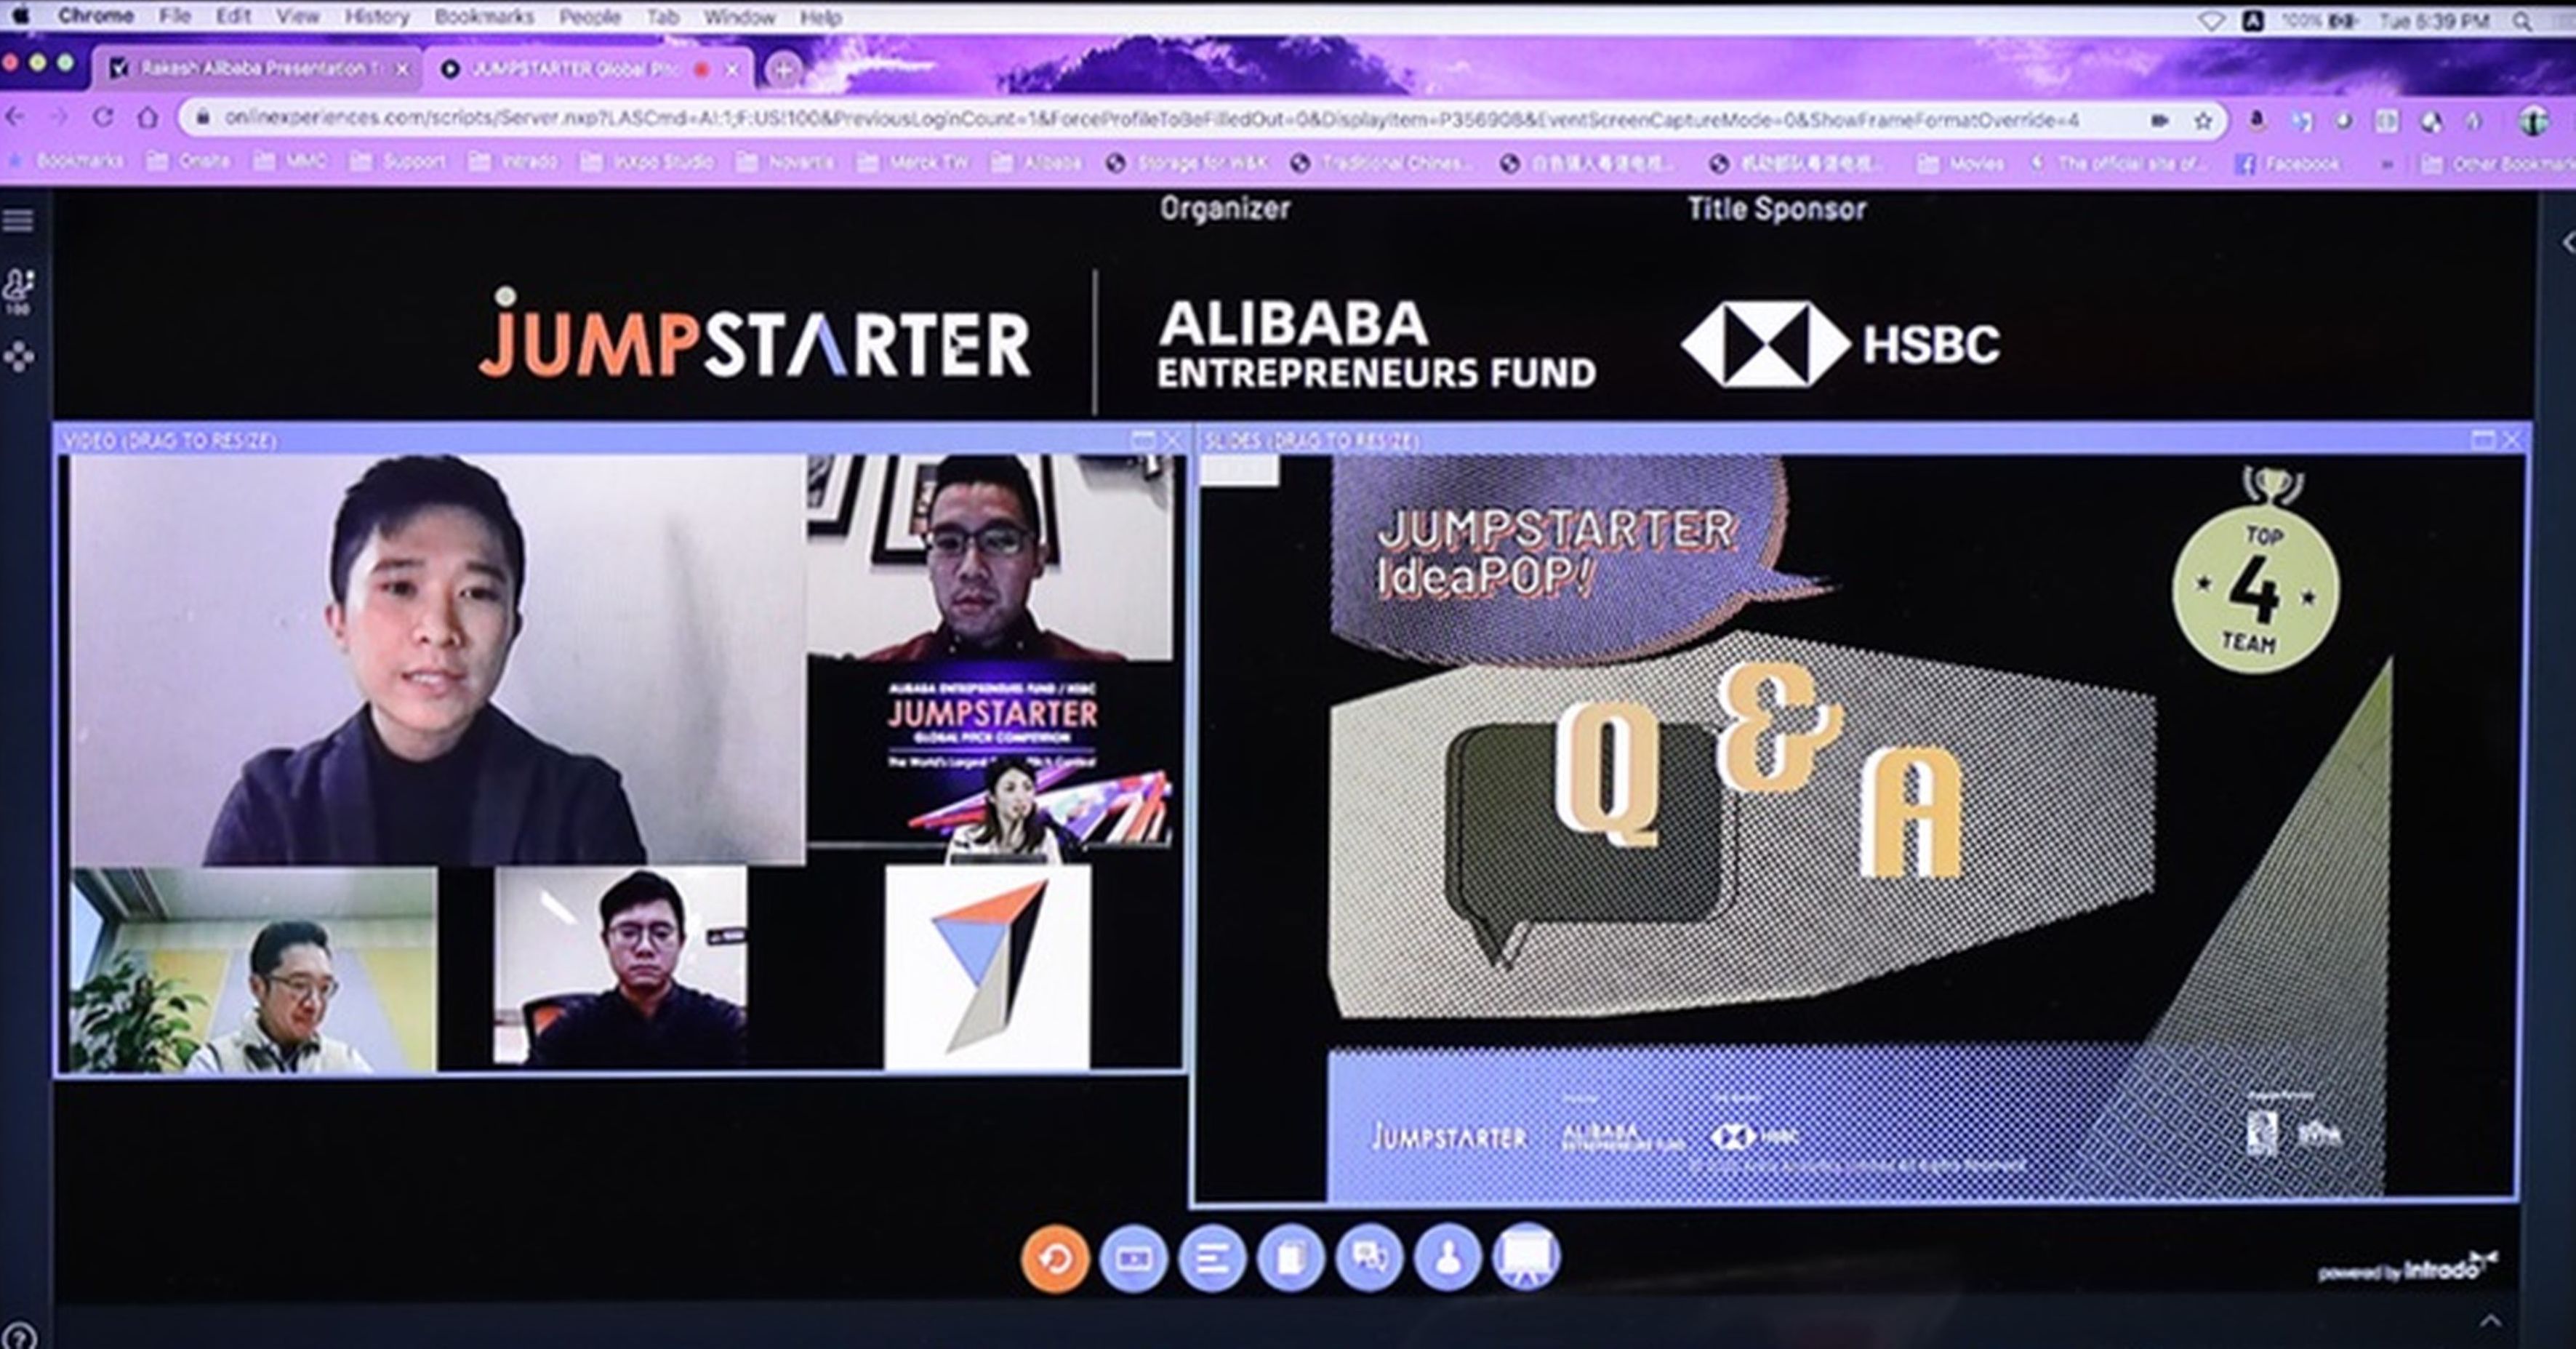 กองทุน Alibaba Hong Kong Entrepreneurs Fund เปิดตัวการแข่งขัน JUMPSTARTER 2021 เพื่อนำเสนอแผนธุรกิจสำหรับผู้ประกอบการทั่วโลก